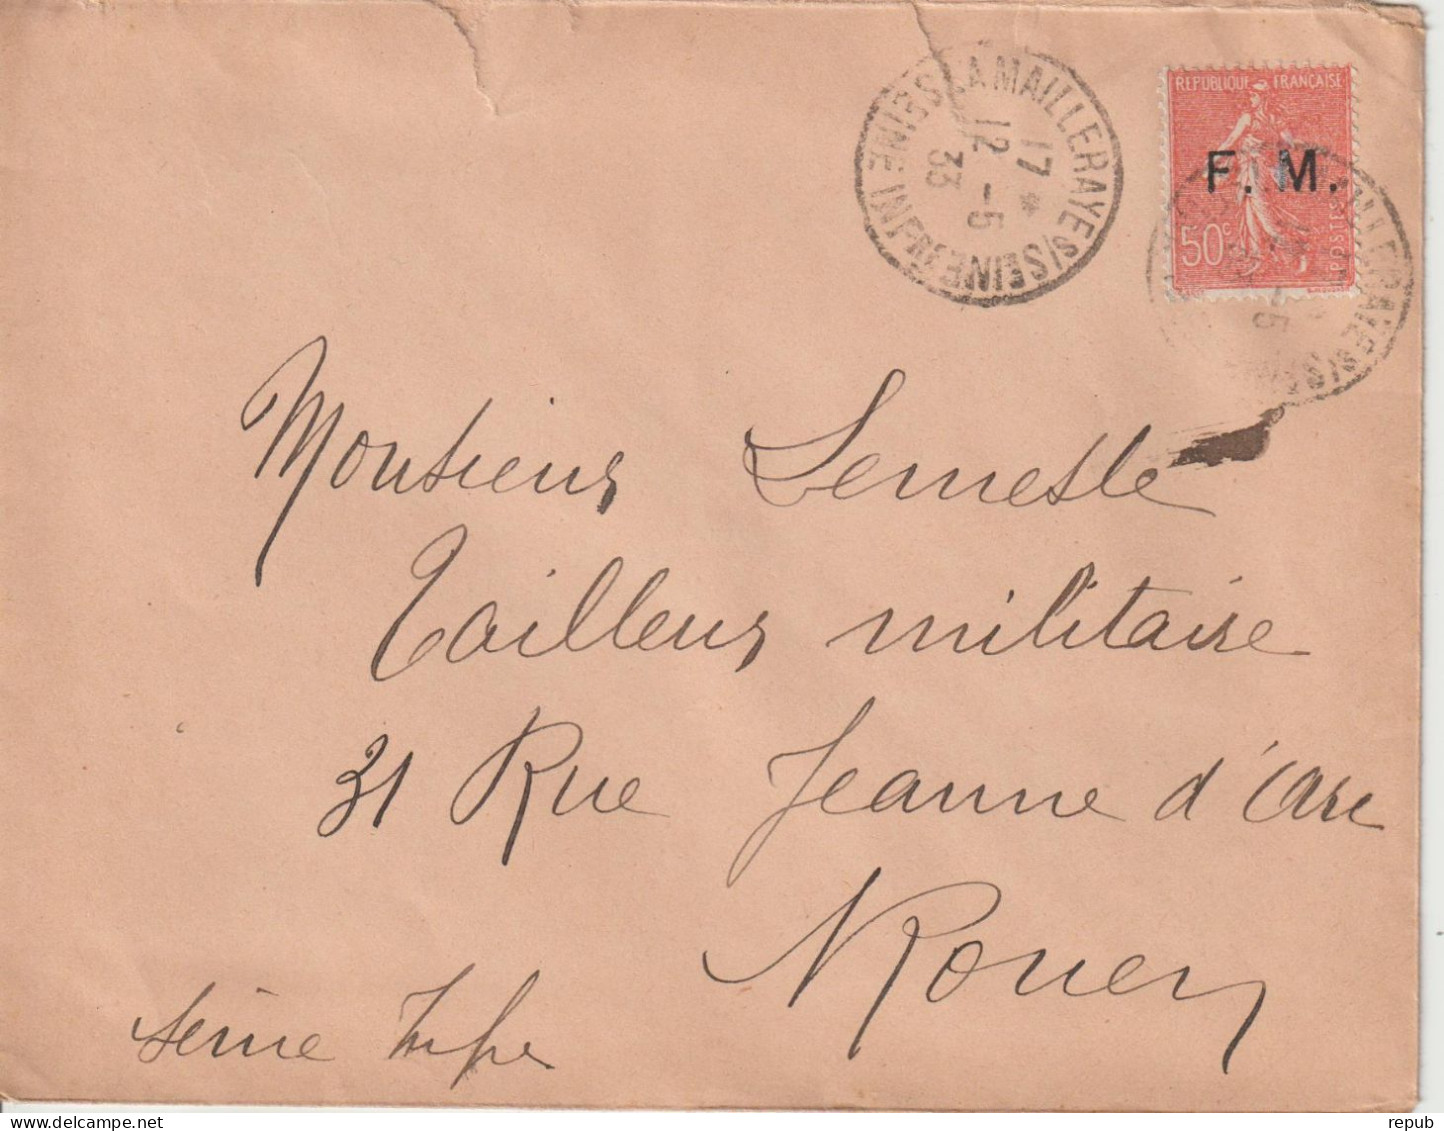 Lettre En Franchise FM 6 Oblitération 1933 La Mailleraye Sur Seine (76) - Military Postage Stamps